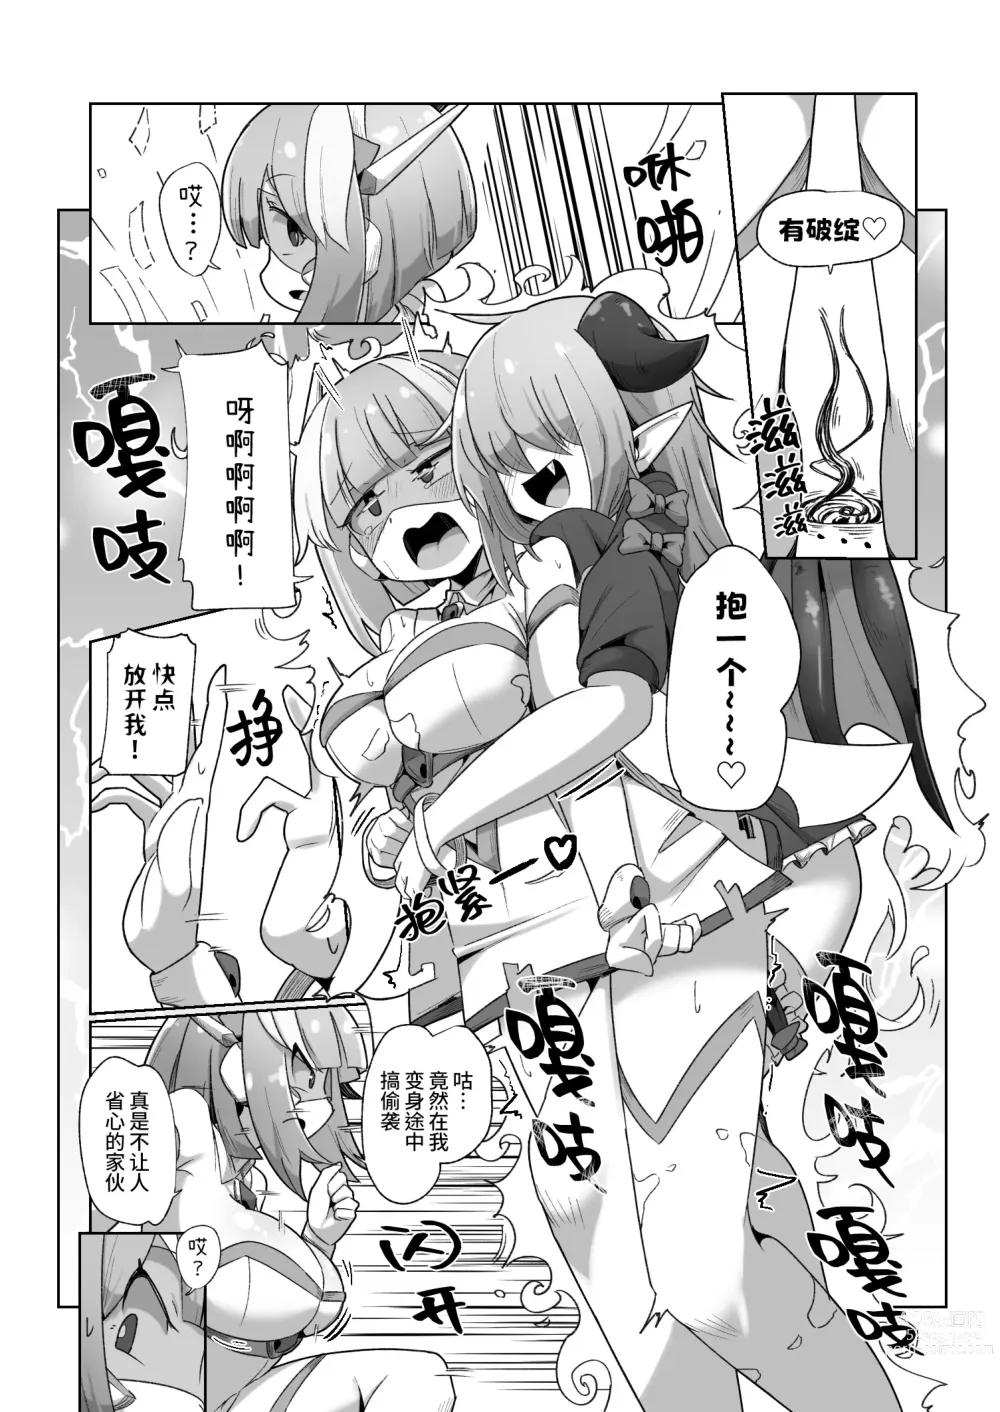 Page 6 of doujinshi 被本该守护的同伴侵犯的这种感觉怎么样啊(笑)??